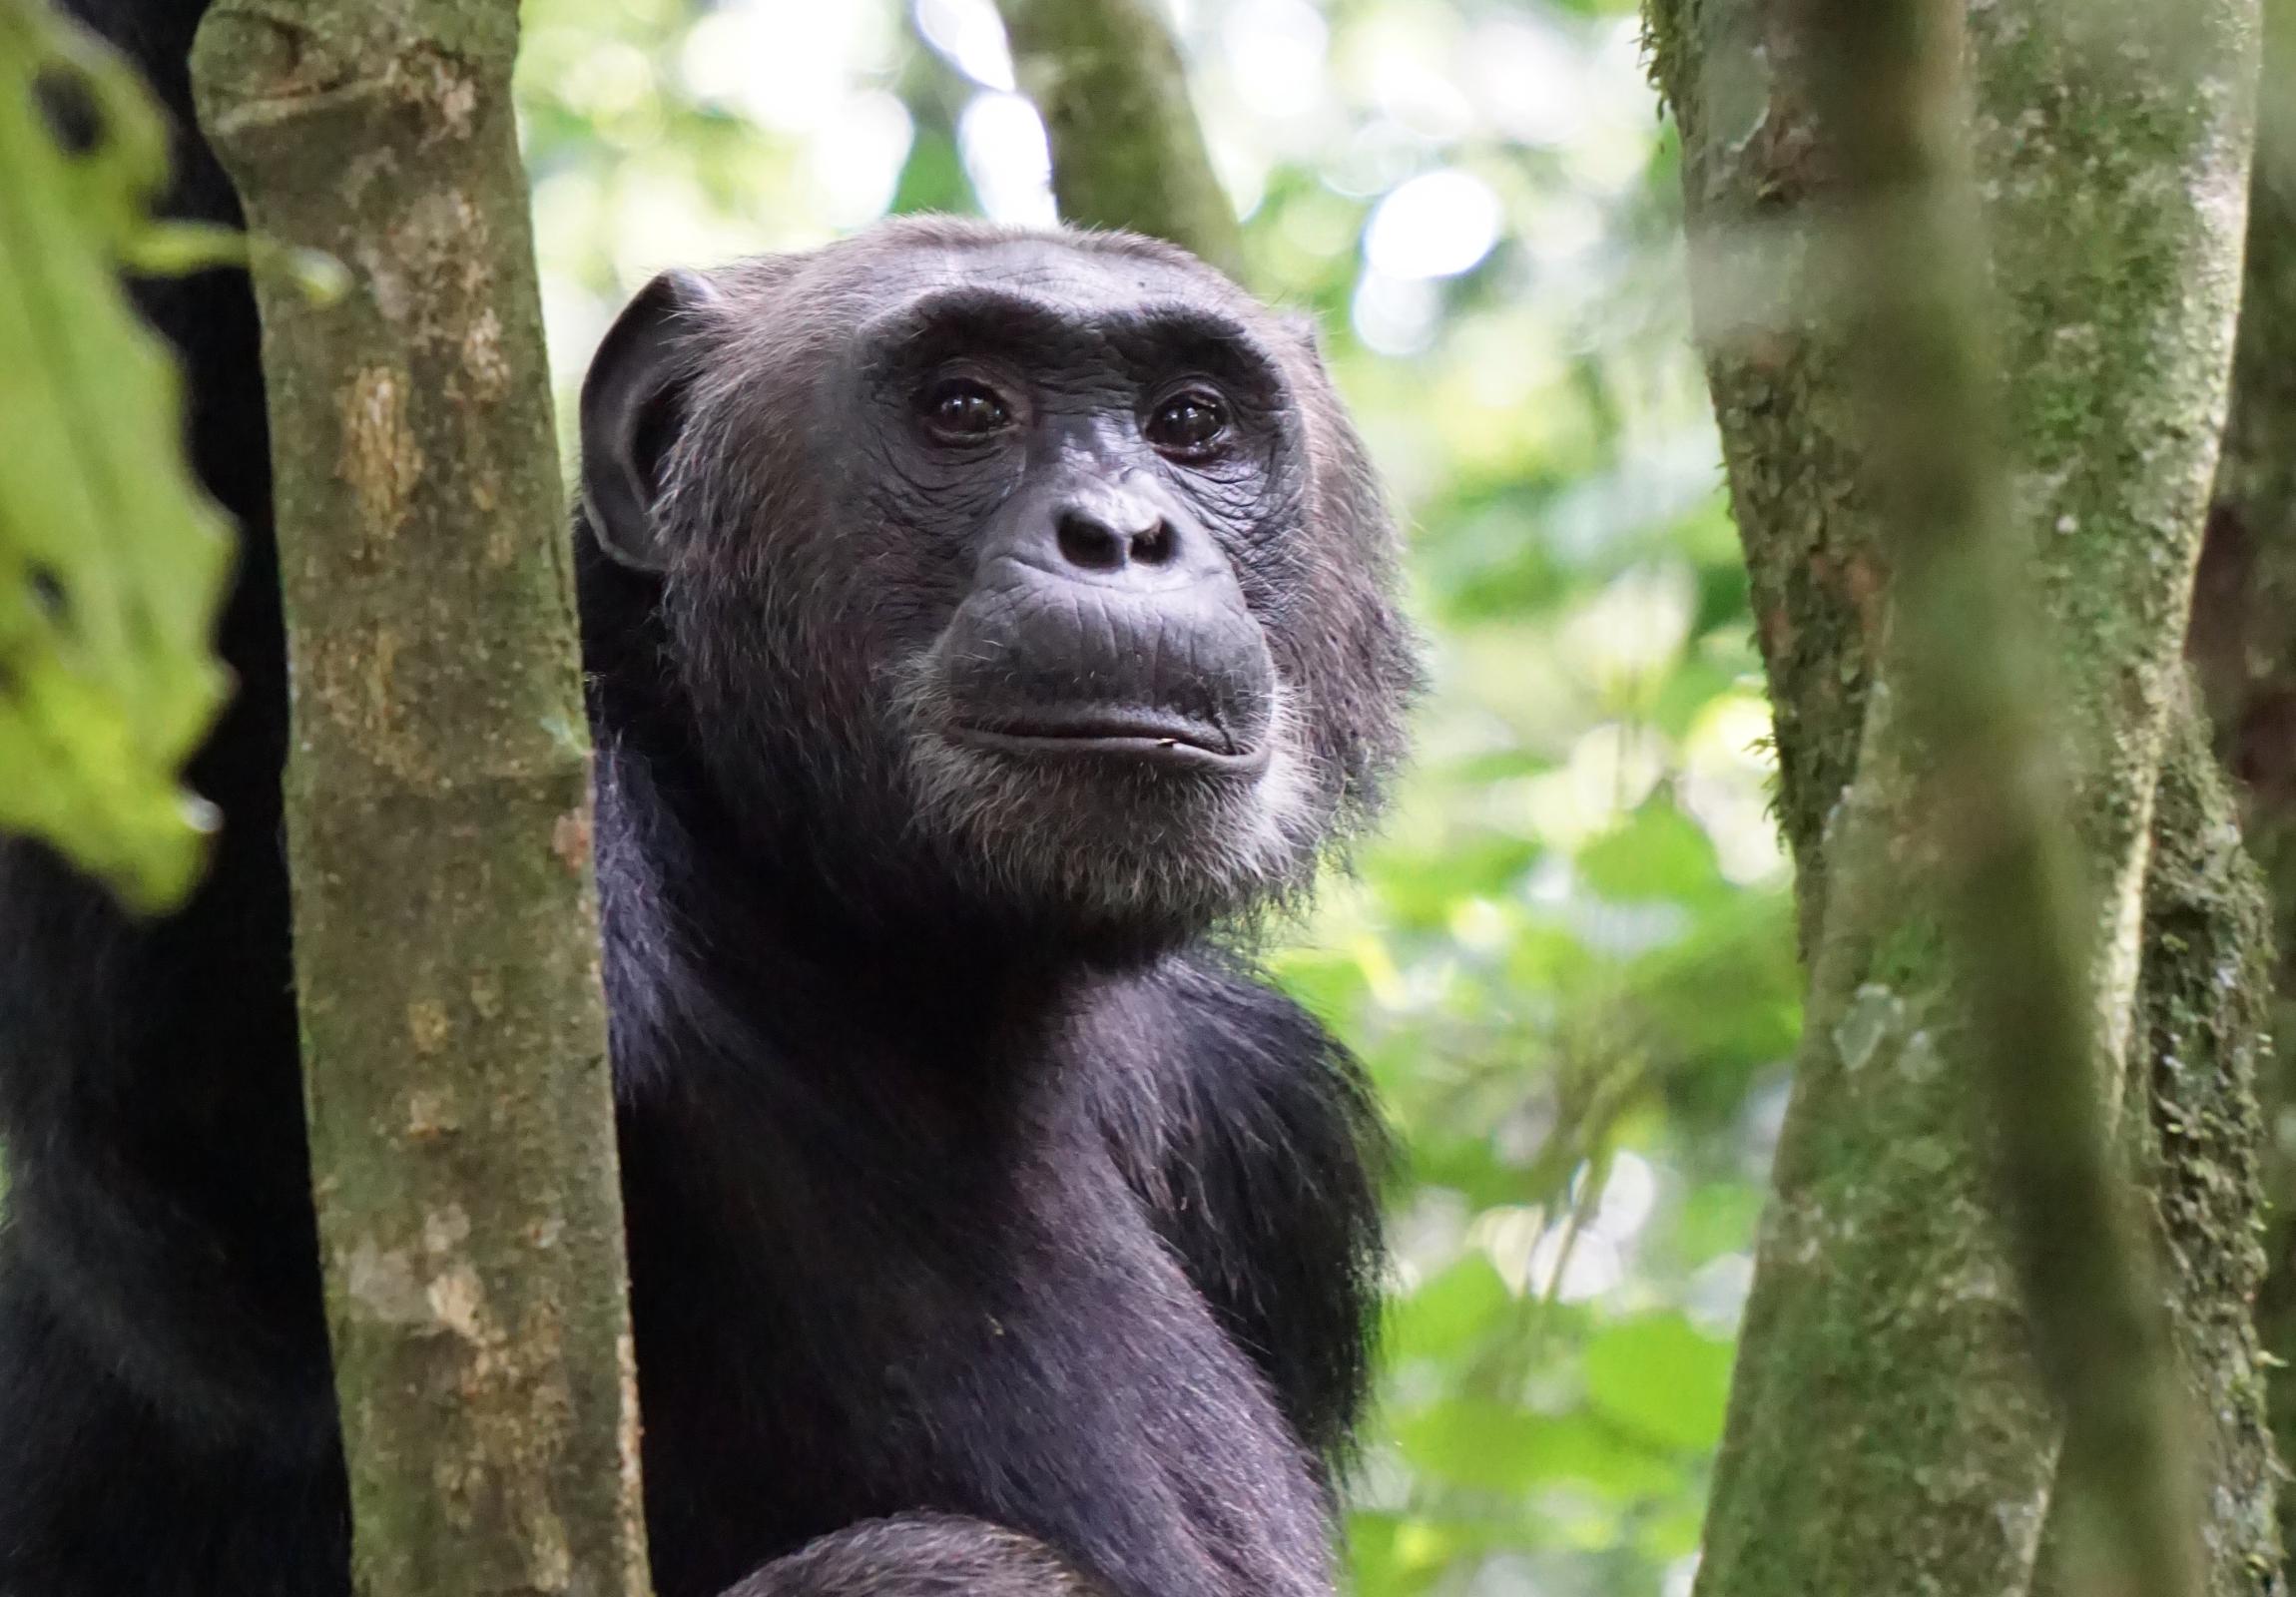 Chimpanzee photo by David Meyers 